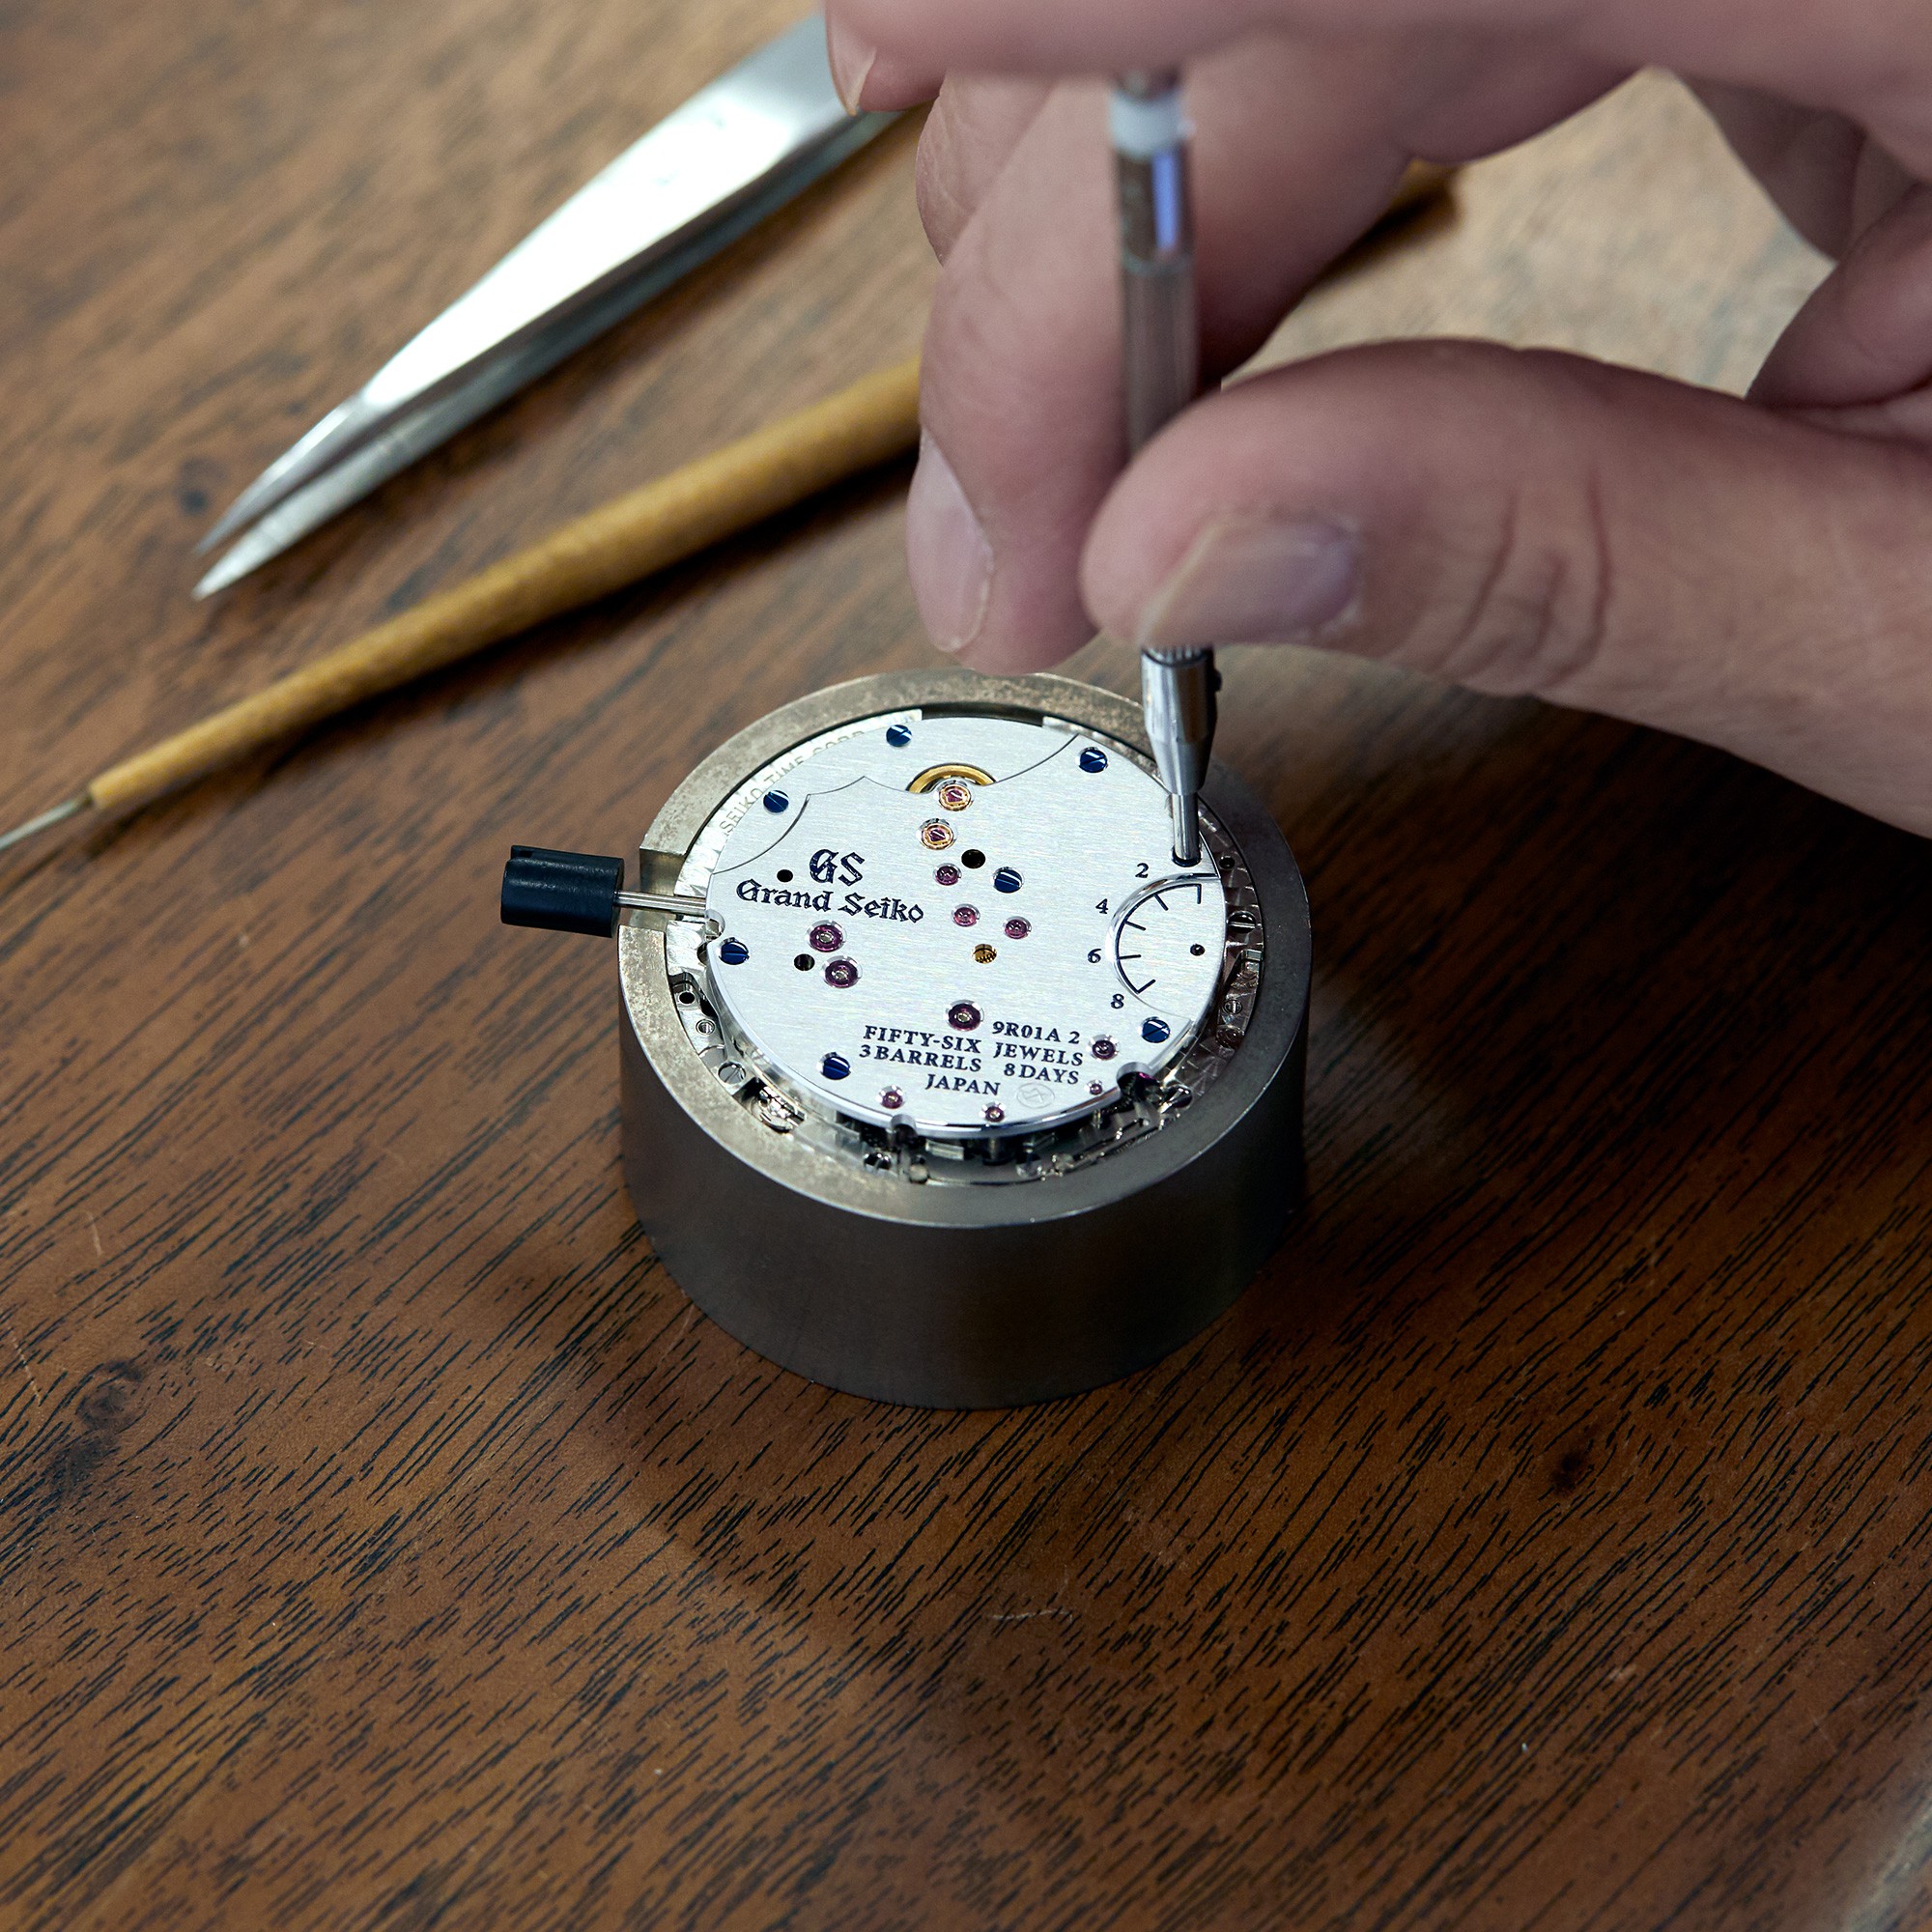 Página Oficial de Seiko® y Grand Seiko® España - Artesanía Relojera Japonesa